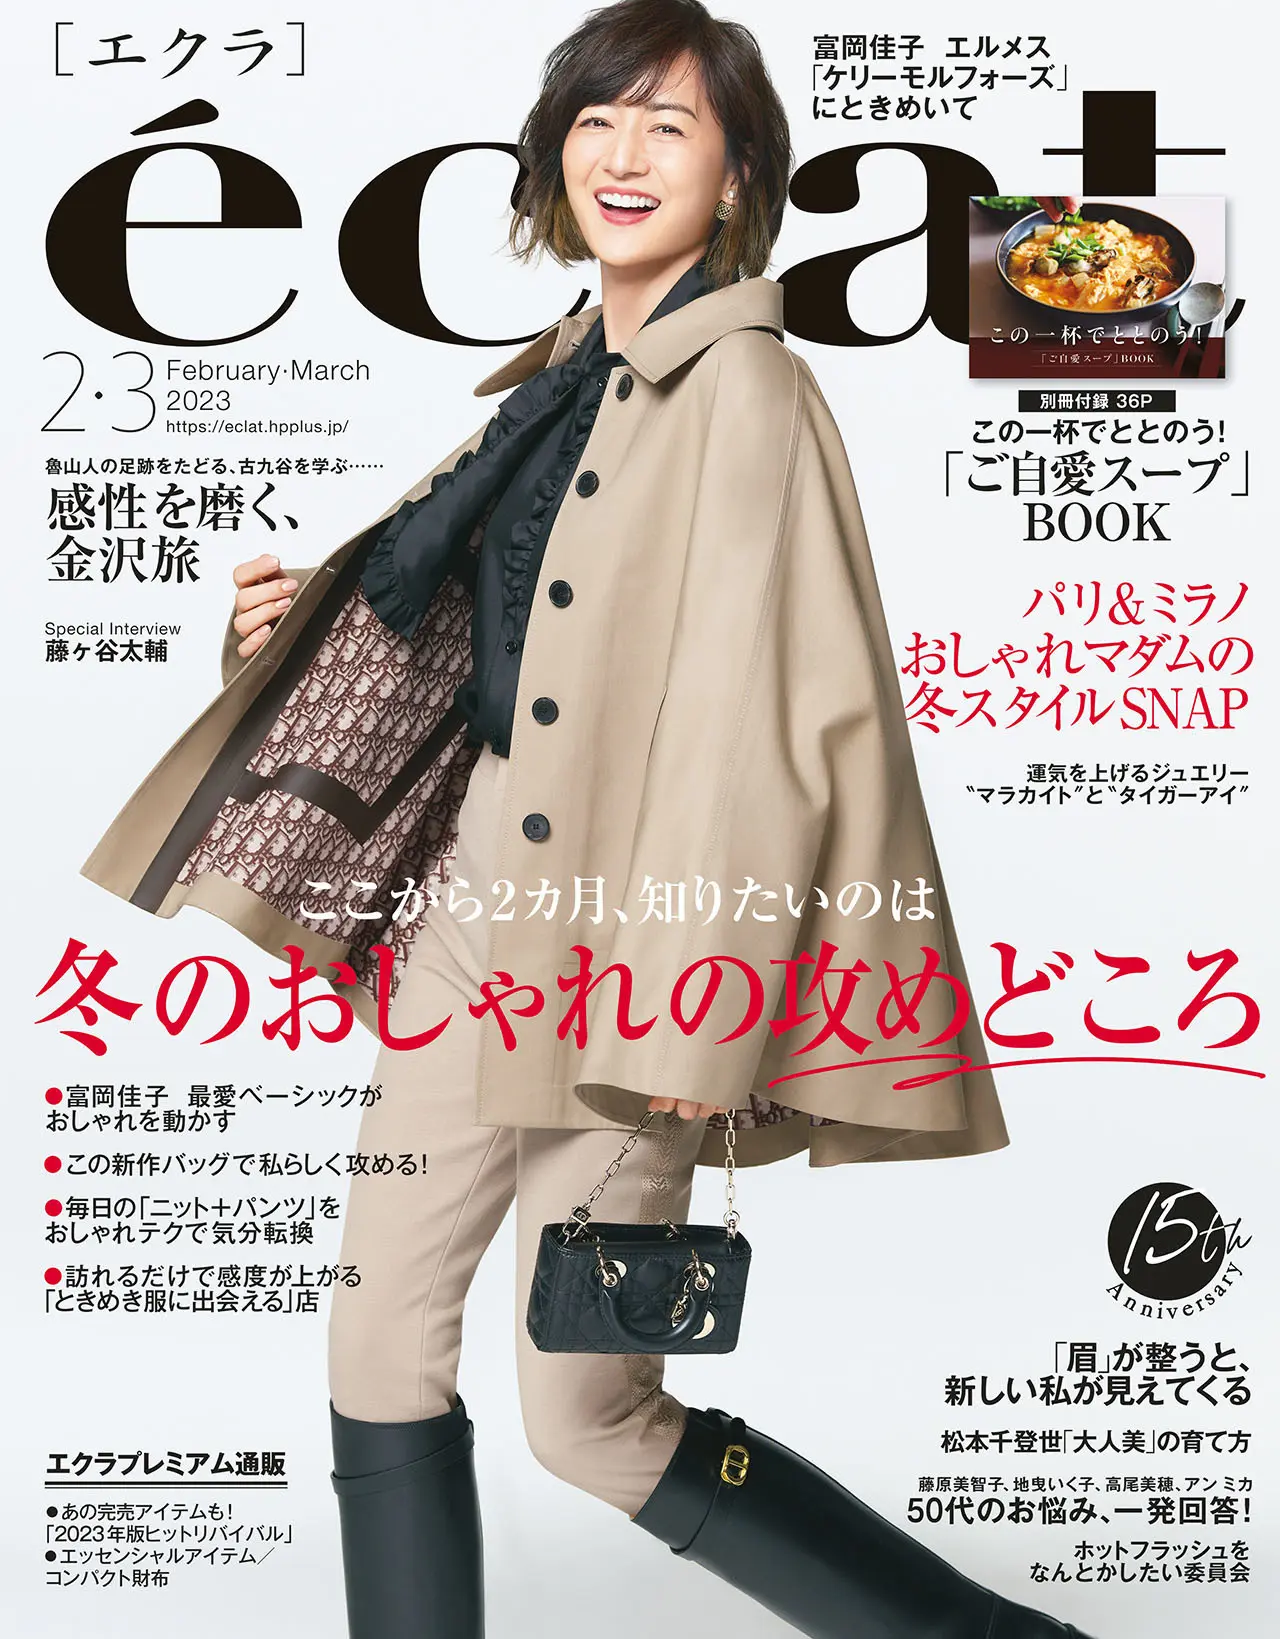 エクラ2月・3月号表紙。カバーモデルは富岡佳子さん。